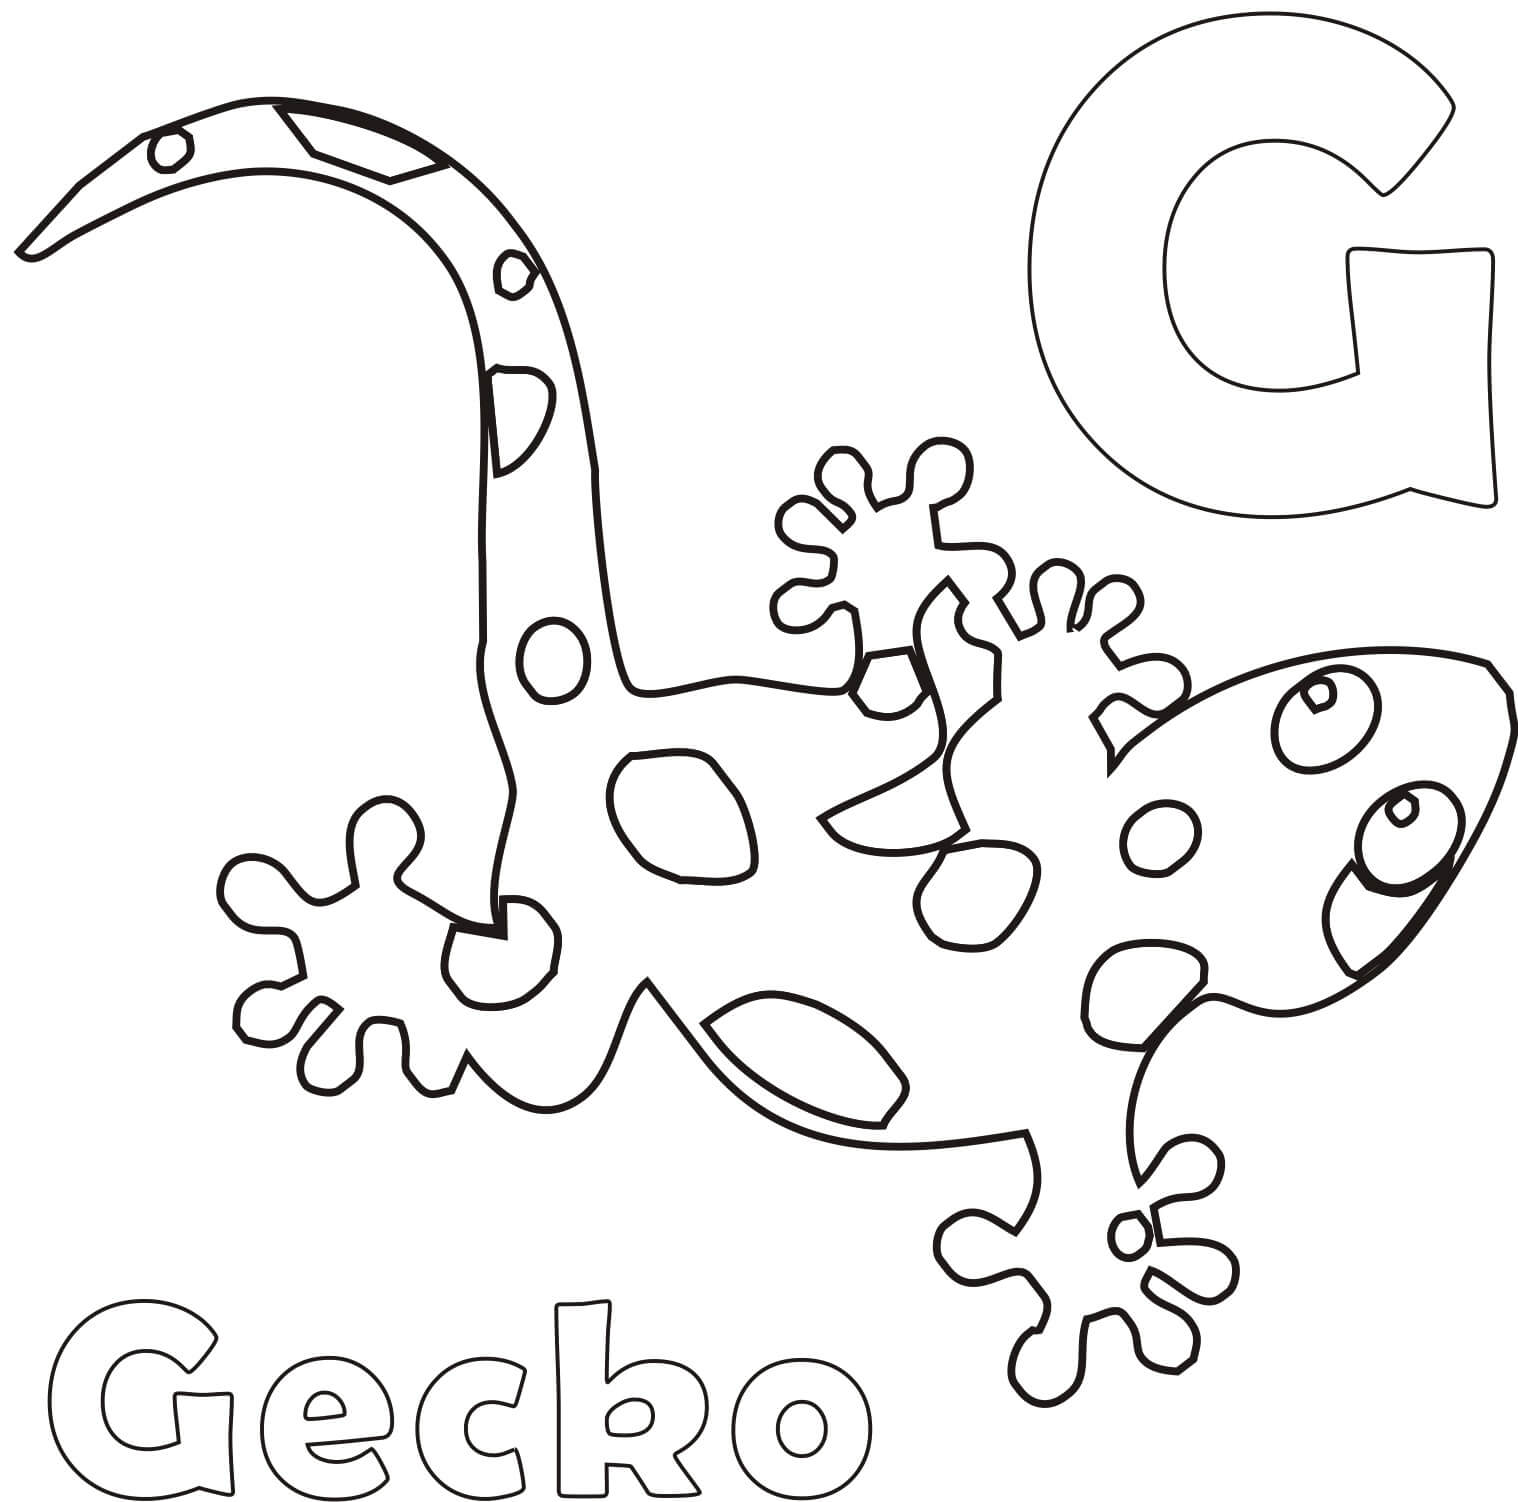 Letra G y Gecko